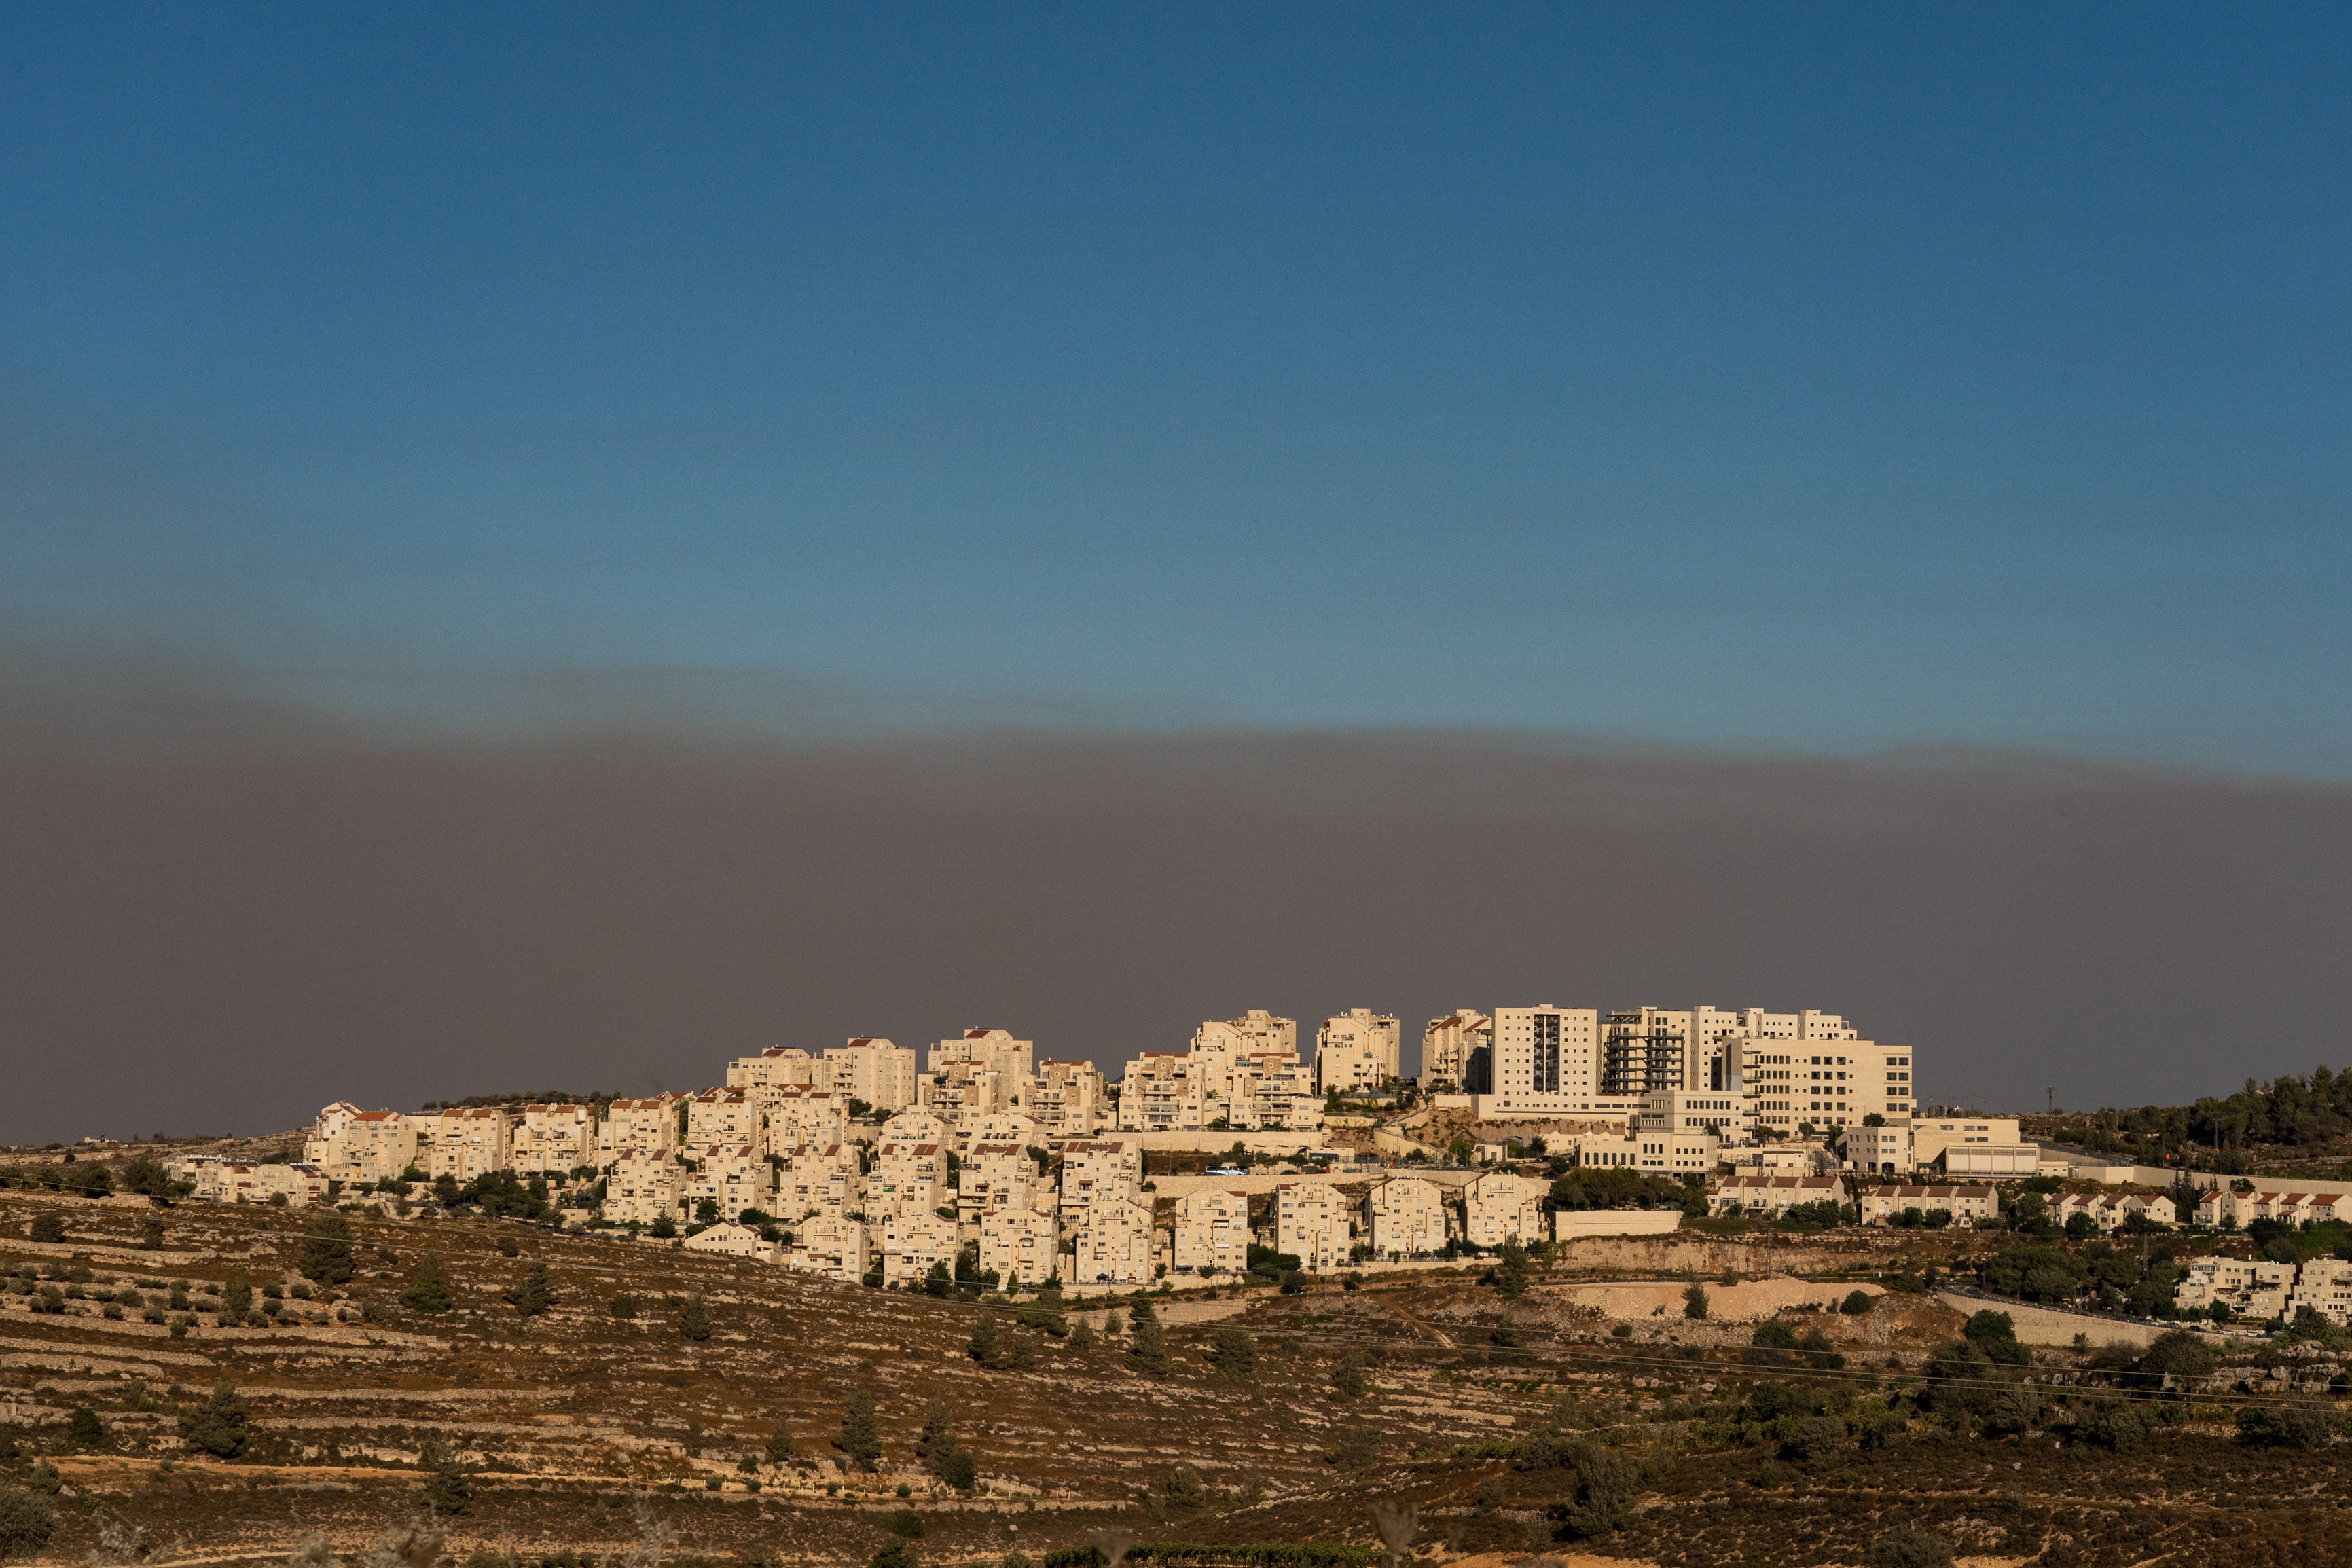 The Israeli settlement Efrat near Bethlehem in the West Bank